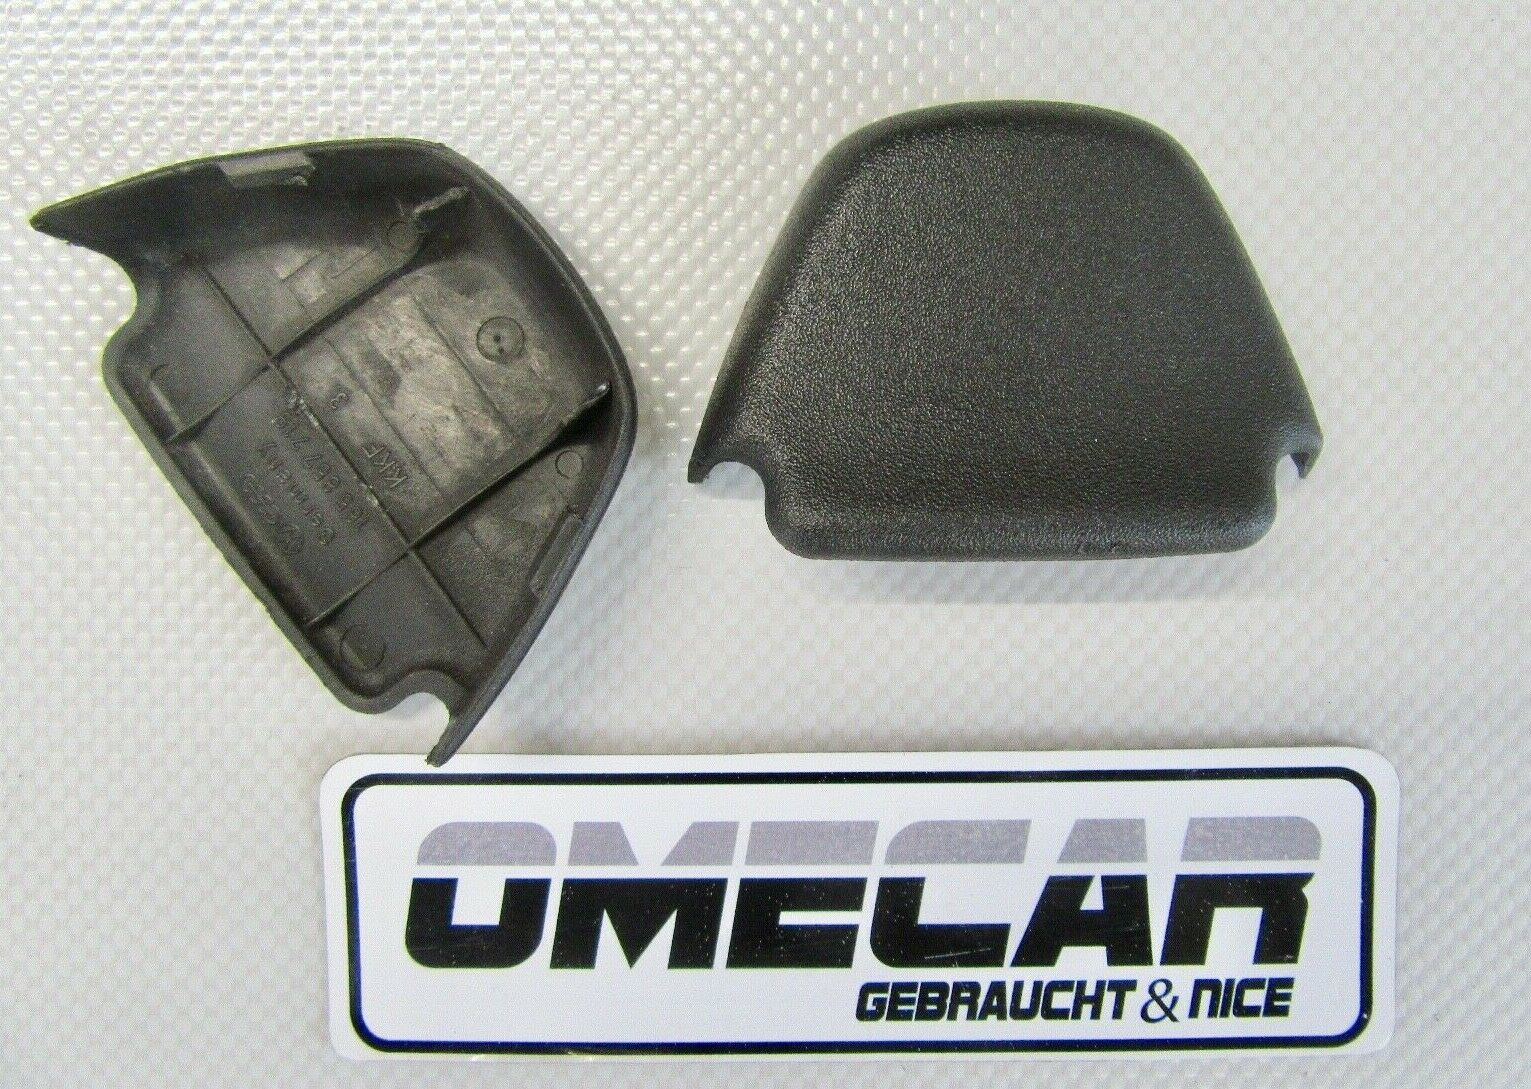 Gurte Archive - Ersatzteile in Originalqualität für alle VW Golf 2 Modelle  Typ 19E / MK2 - Lager von Neuteilen und Gebrauchtteilen